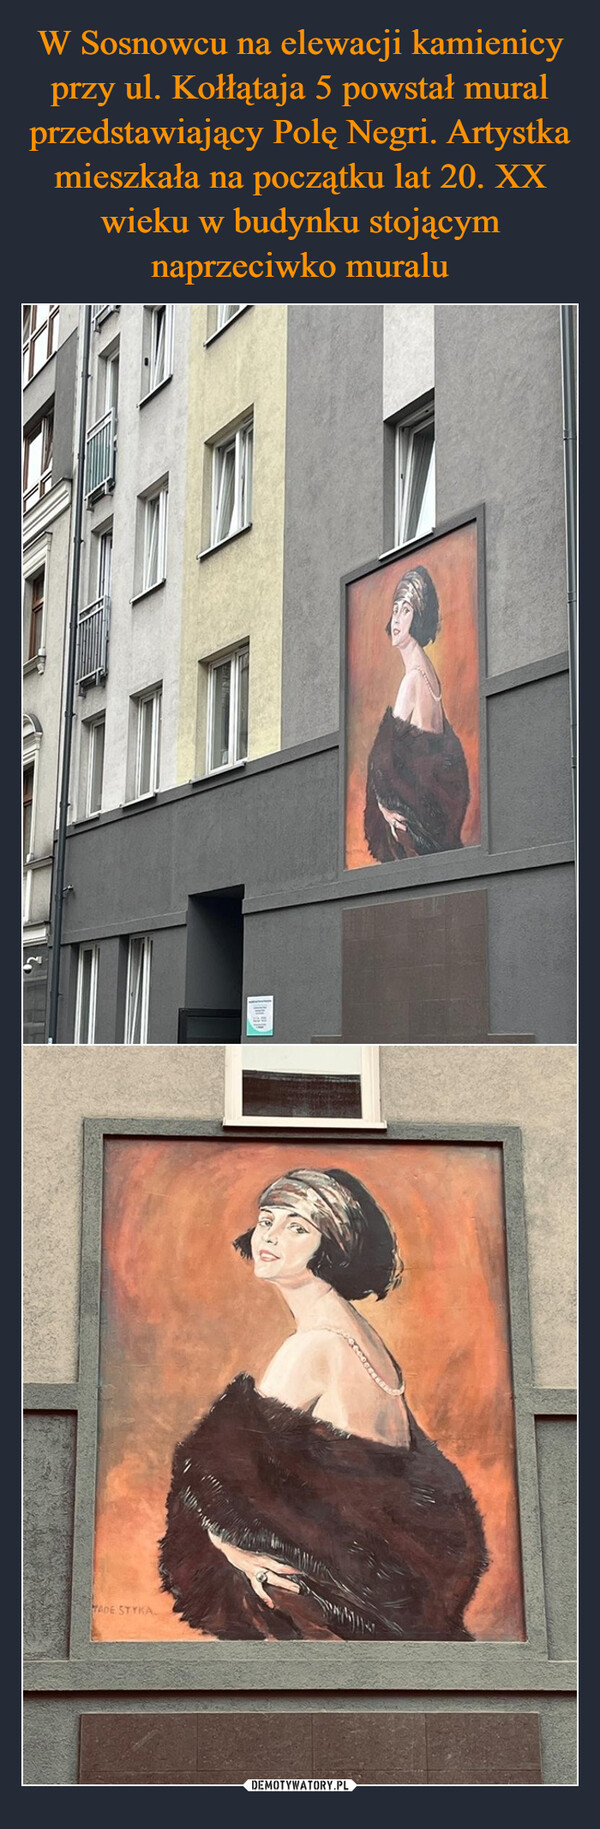 W Sosnowcu na elewacji kamienicy przy ul. Kołłątaja 5 powstał mural przedstawiający Polę Negri. Artystka mieszkała na początku lat 20. XX wieku w budynku stojącym naprzeciwko muralu